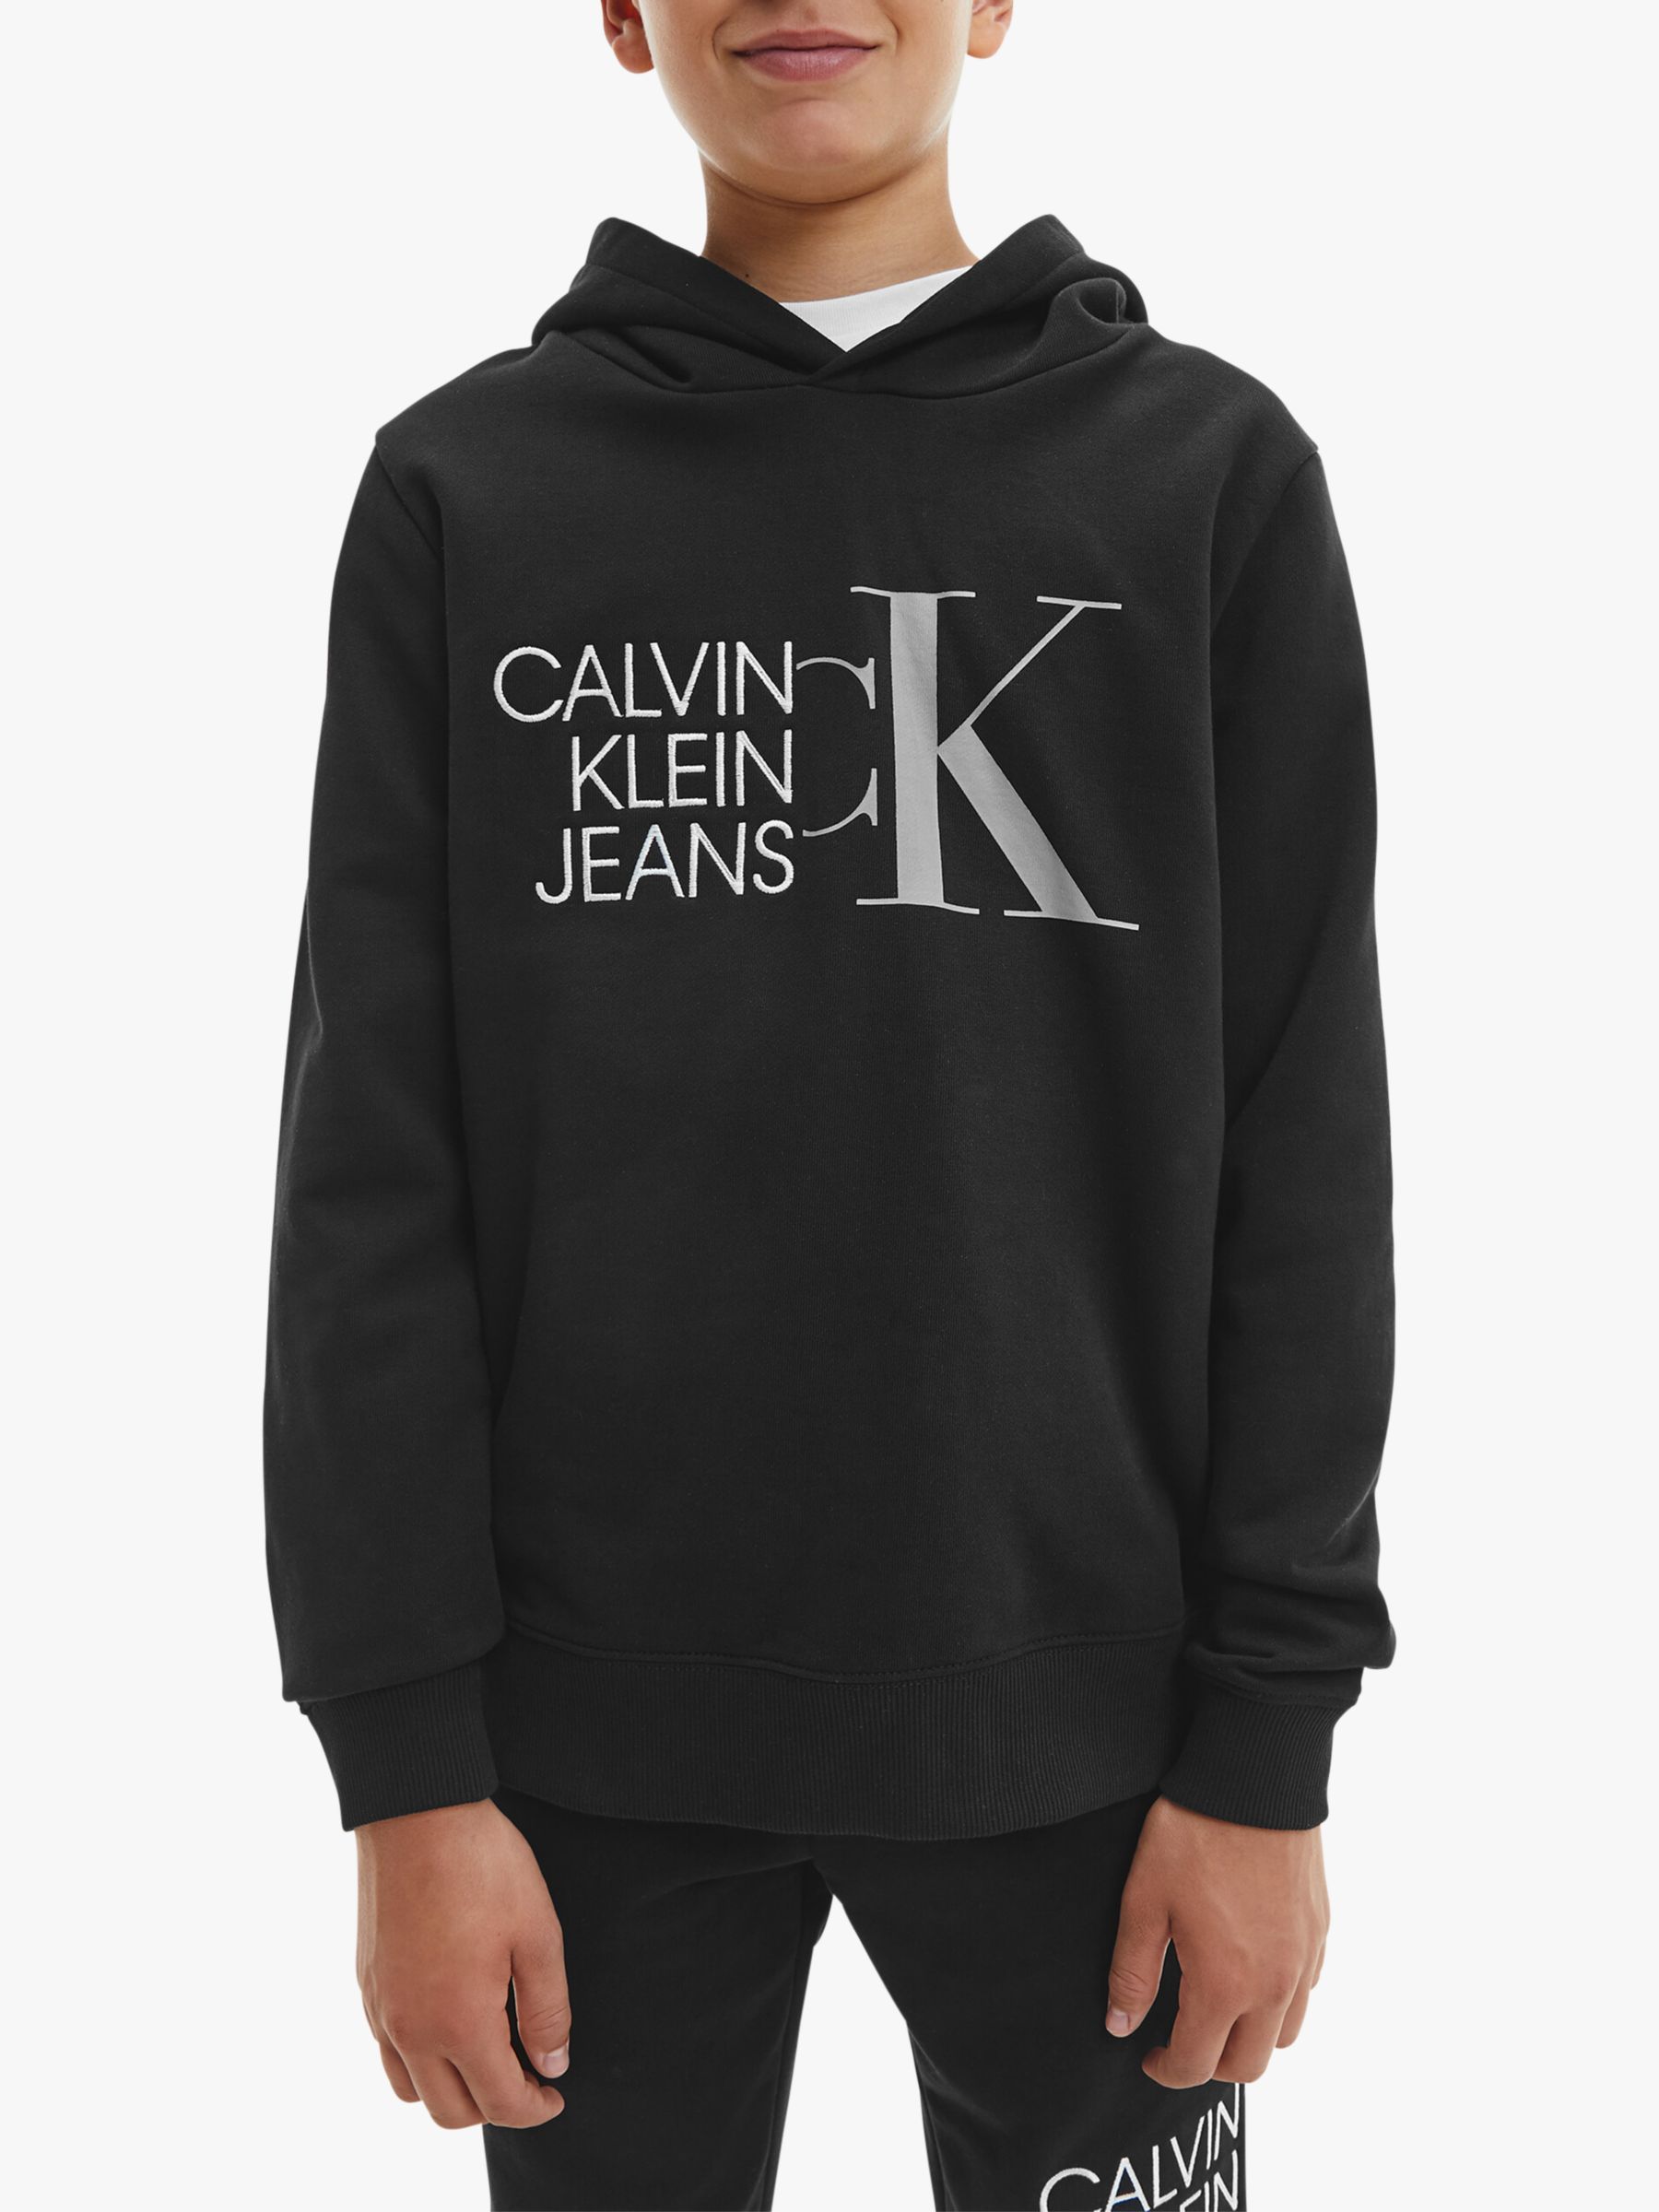 Calvin Klein Kids' Hybrid Logo Hoodie, Black at John Lewis & Partners